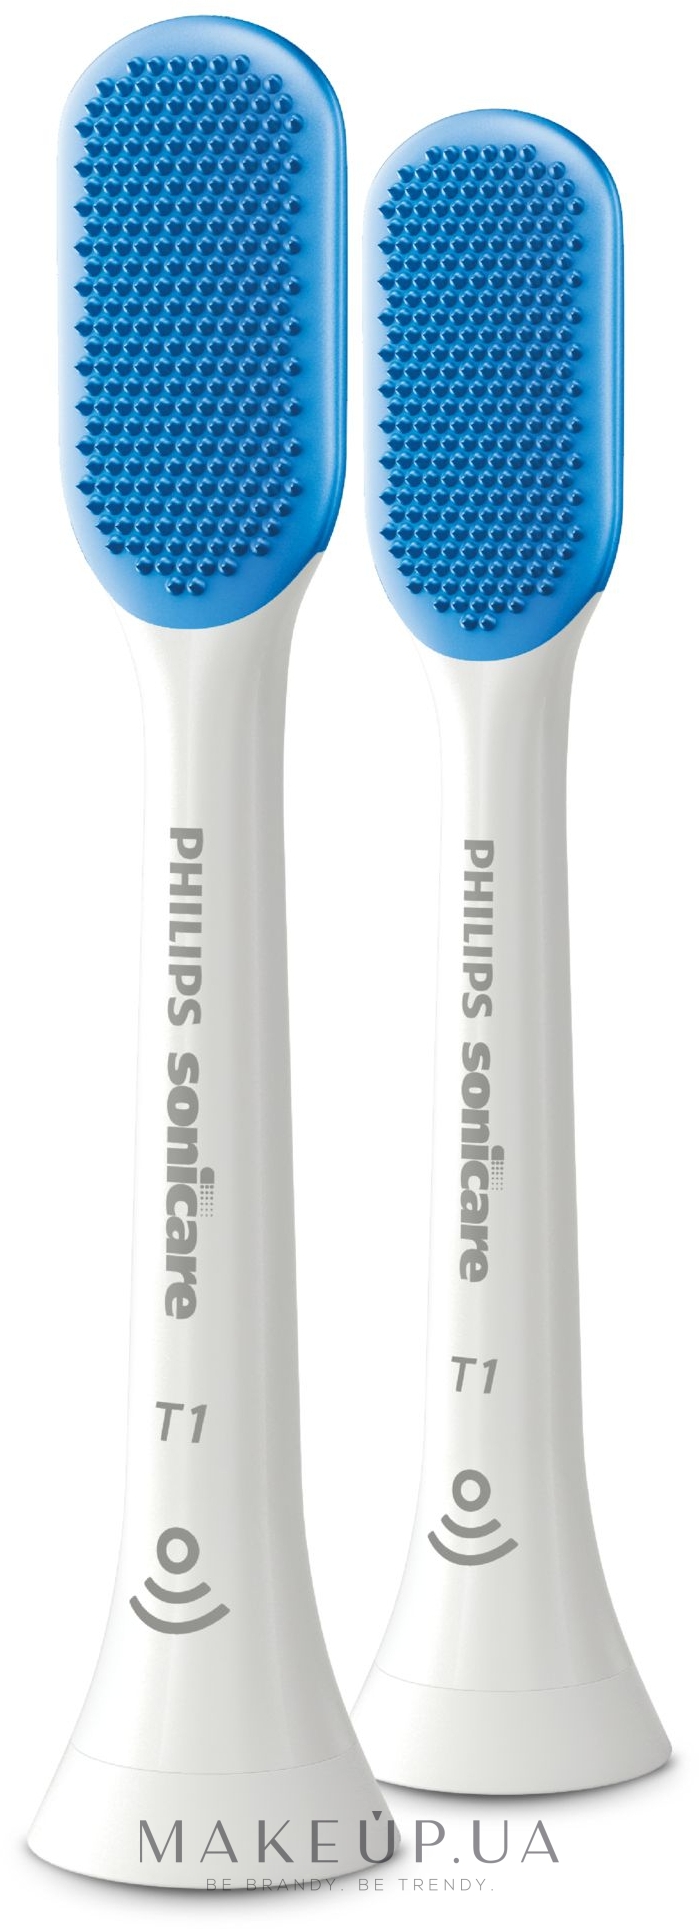 Насадки для электрической зубной щетки для чистки языка - Philips TongueCare + HX8072/01 — фото 2шт